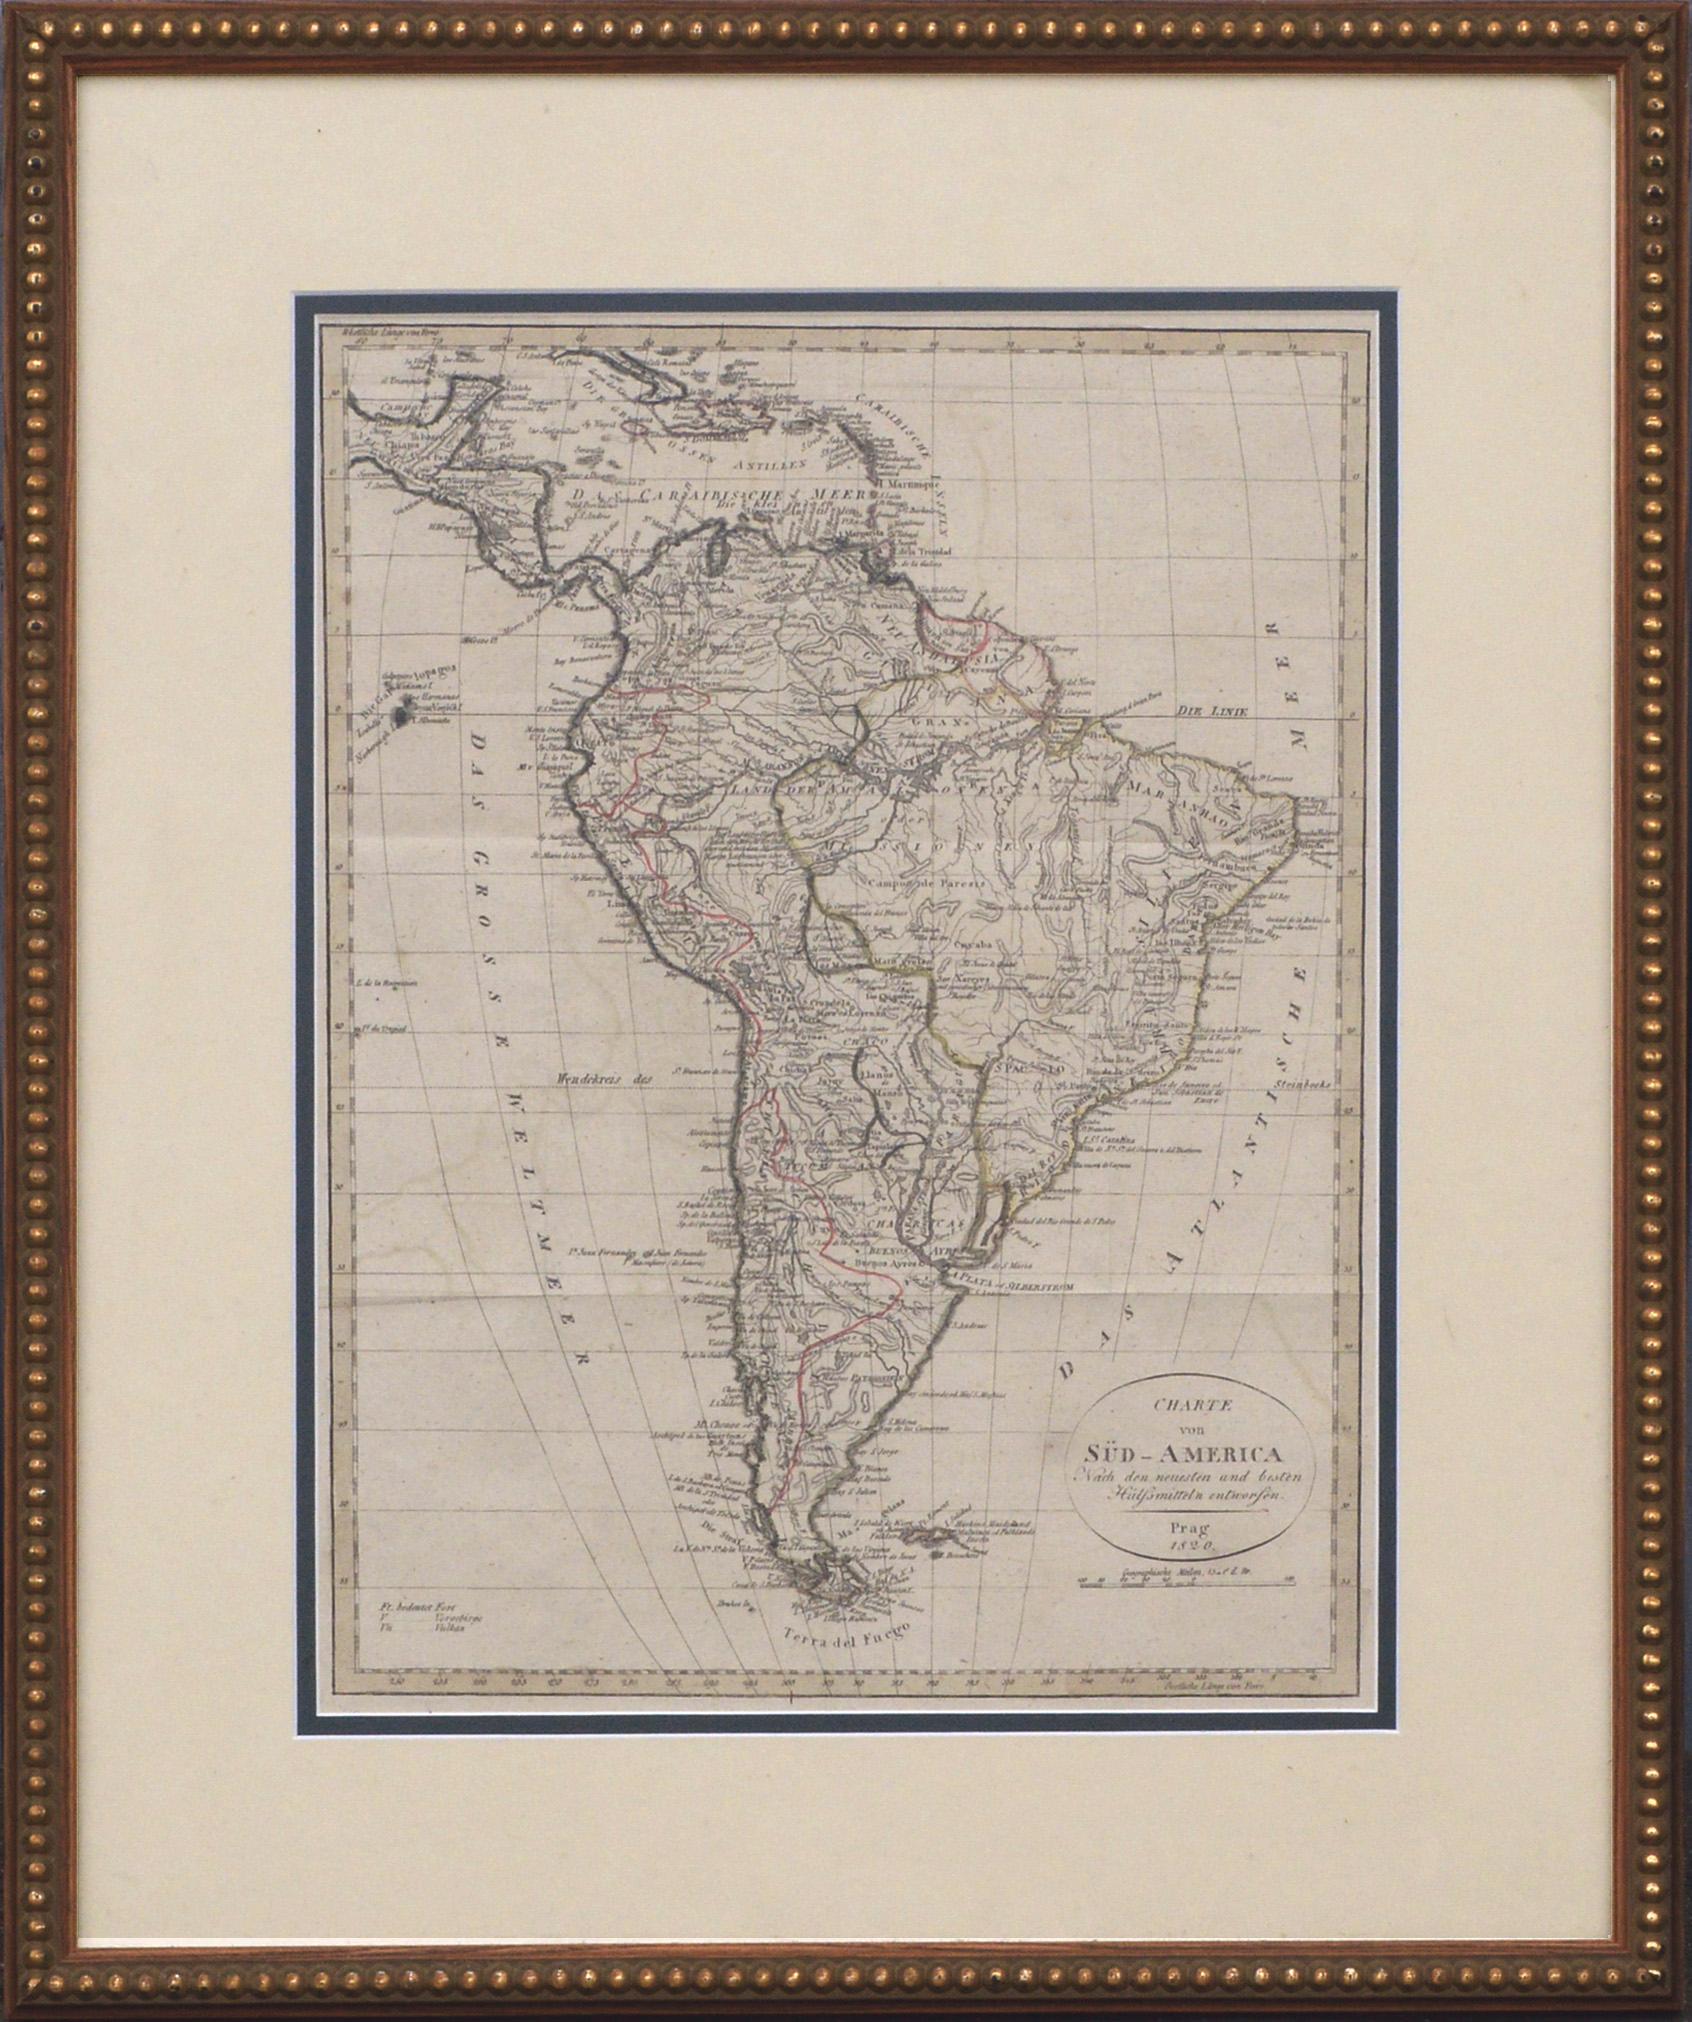 Charte von Sud-America (Karte Südamerikas) – Radierung mit handgezeichneten Umrissen